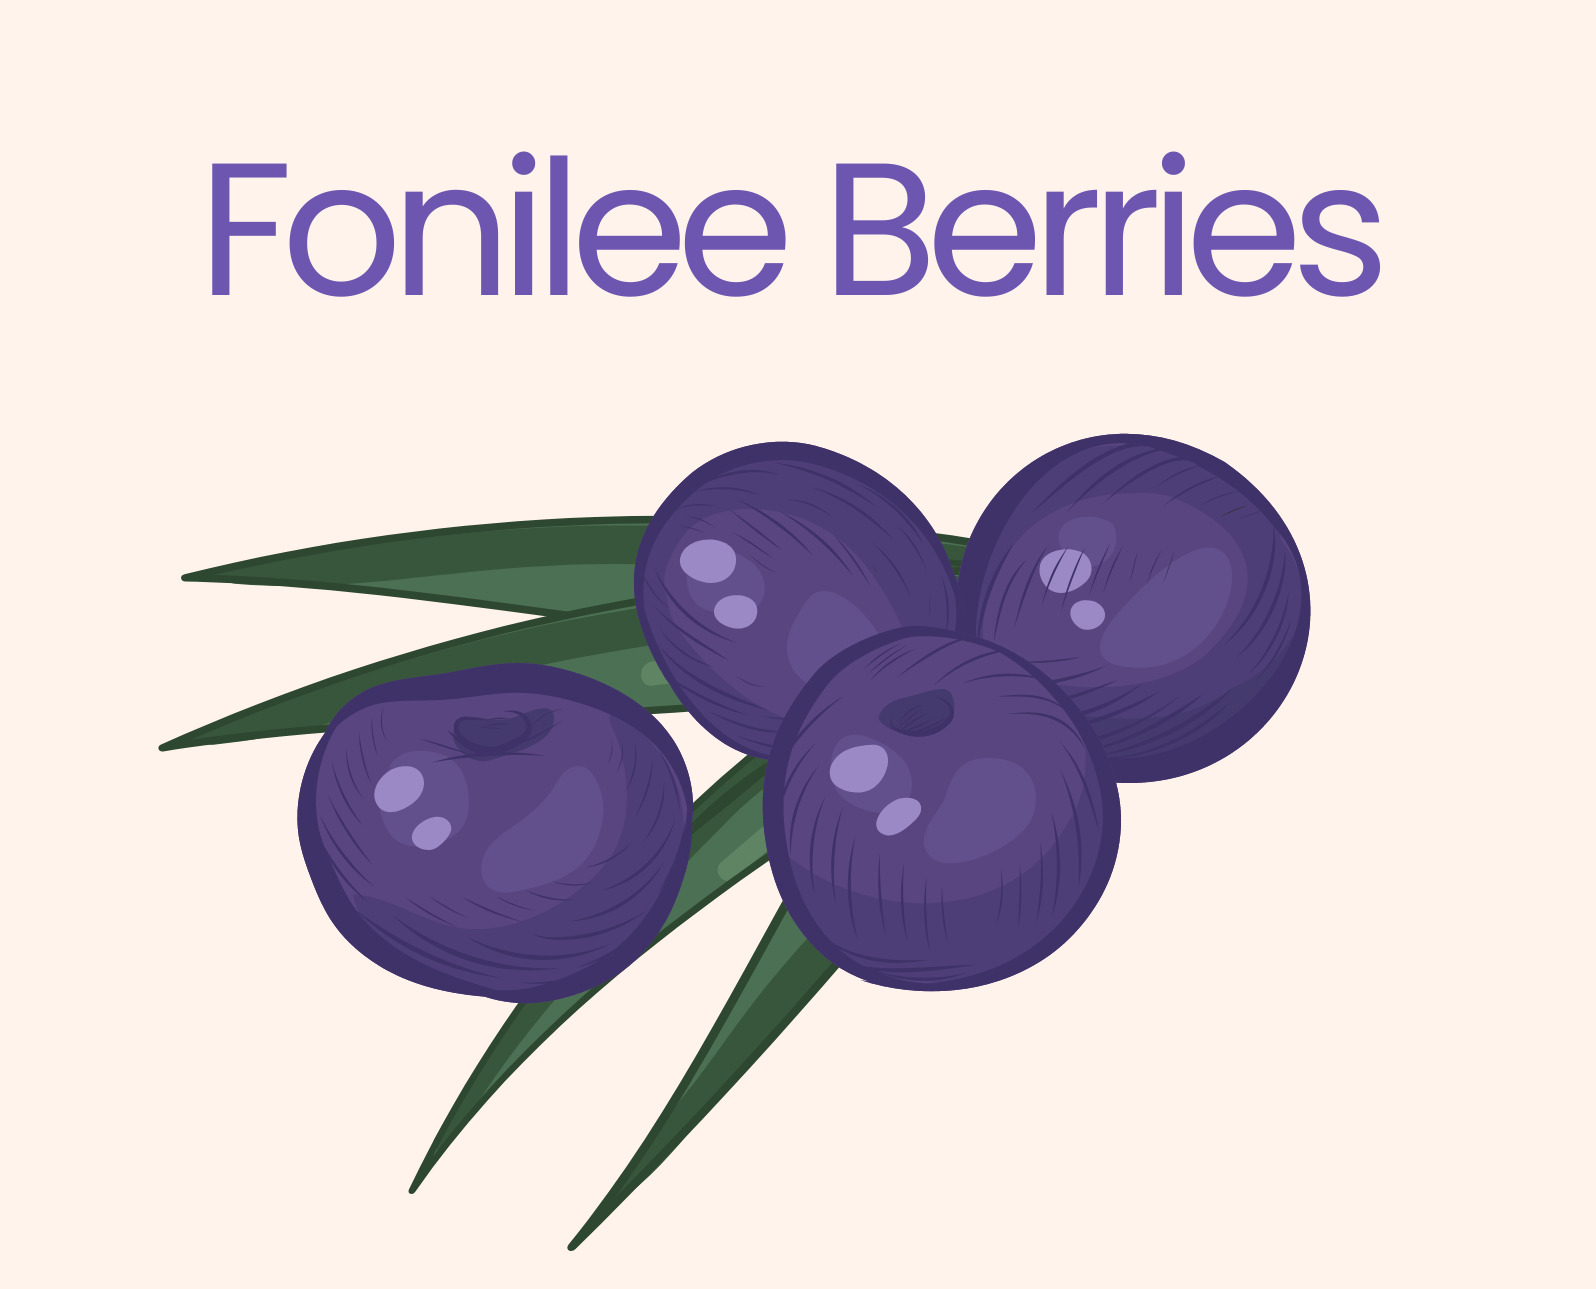 Fonilee Berries